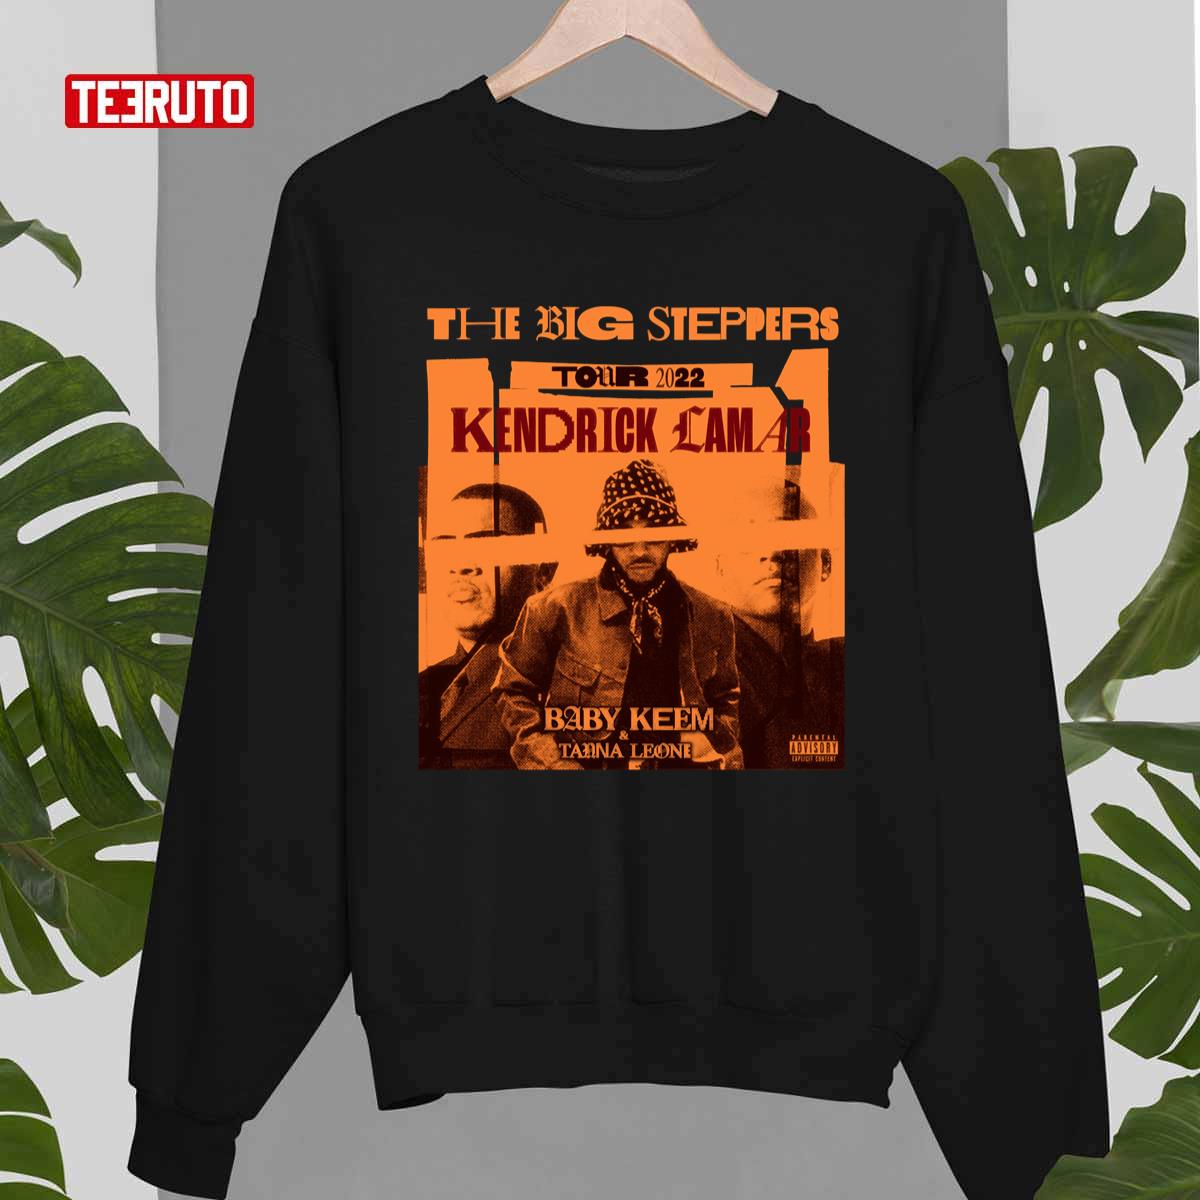 Kendrick Lamar Big Steppers Concert Tour Merch Tee T-shirt Logo Summer  Men/Women Tshirt Short Sleeve 